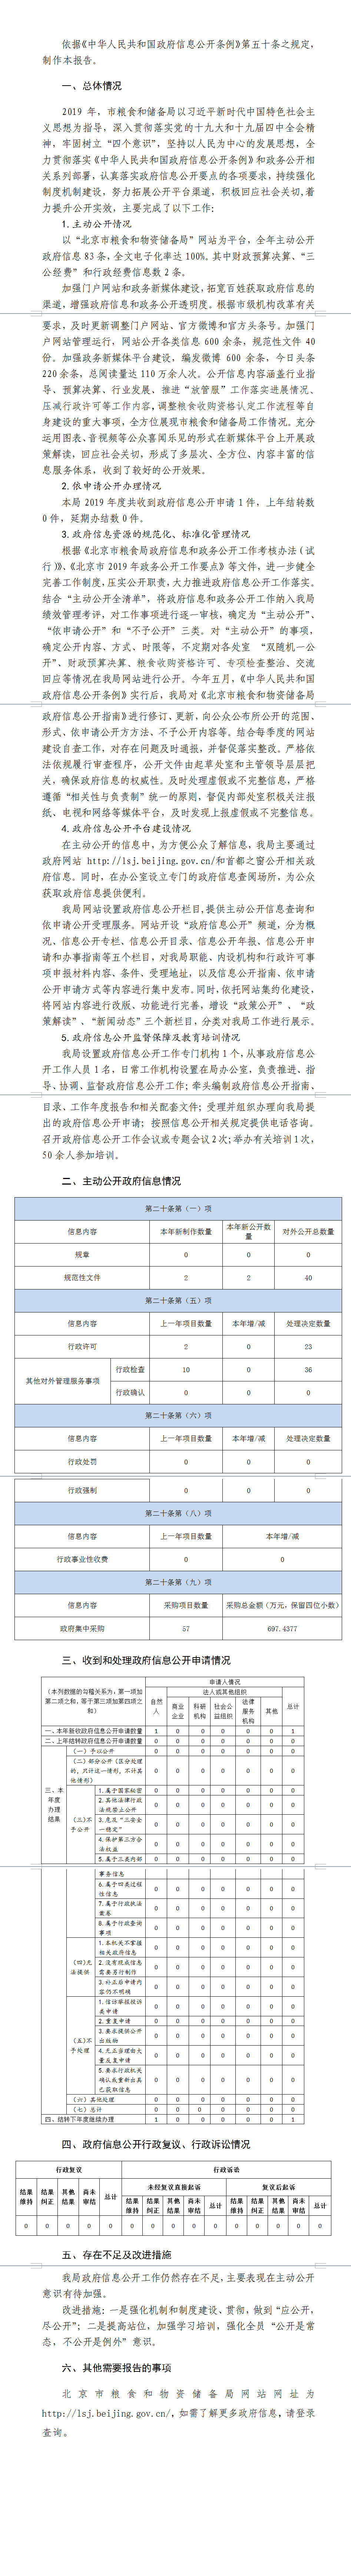 北京市粮食和物资储备局2019年政府信息公开工作年度报告1.png